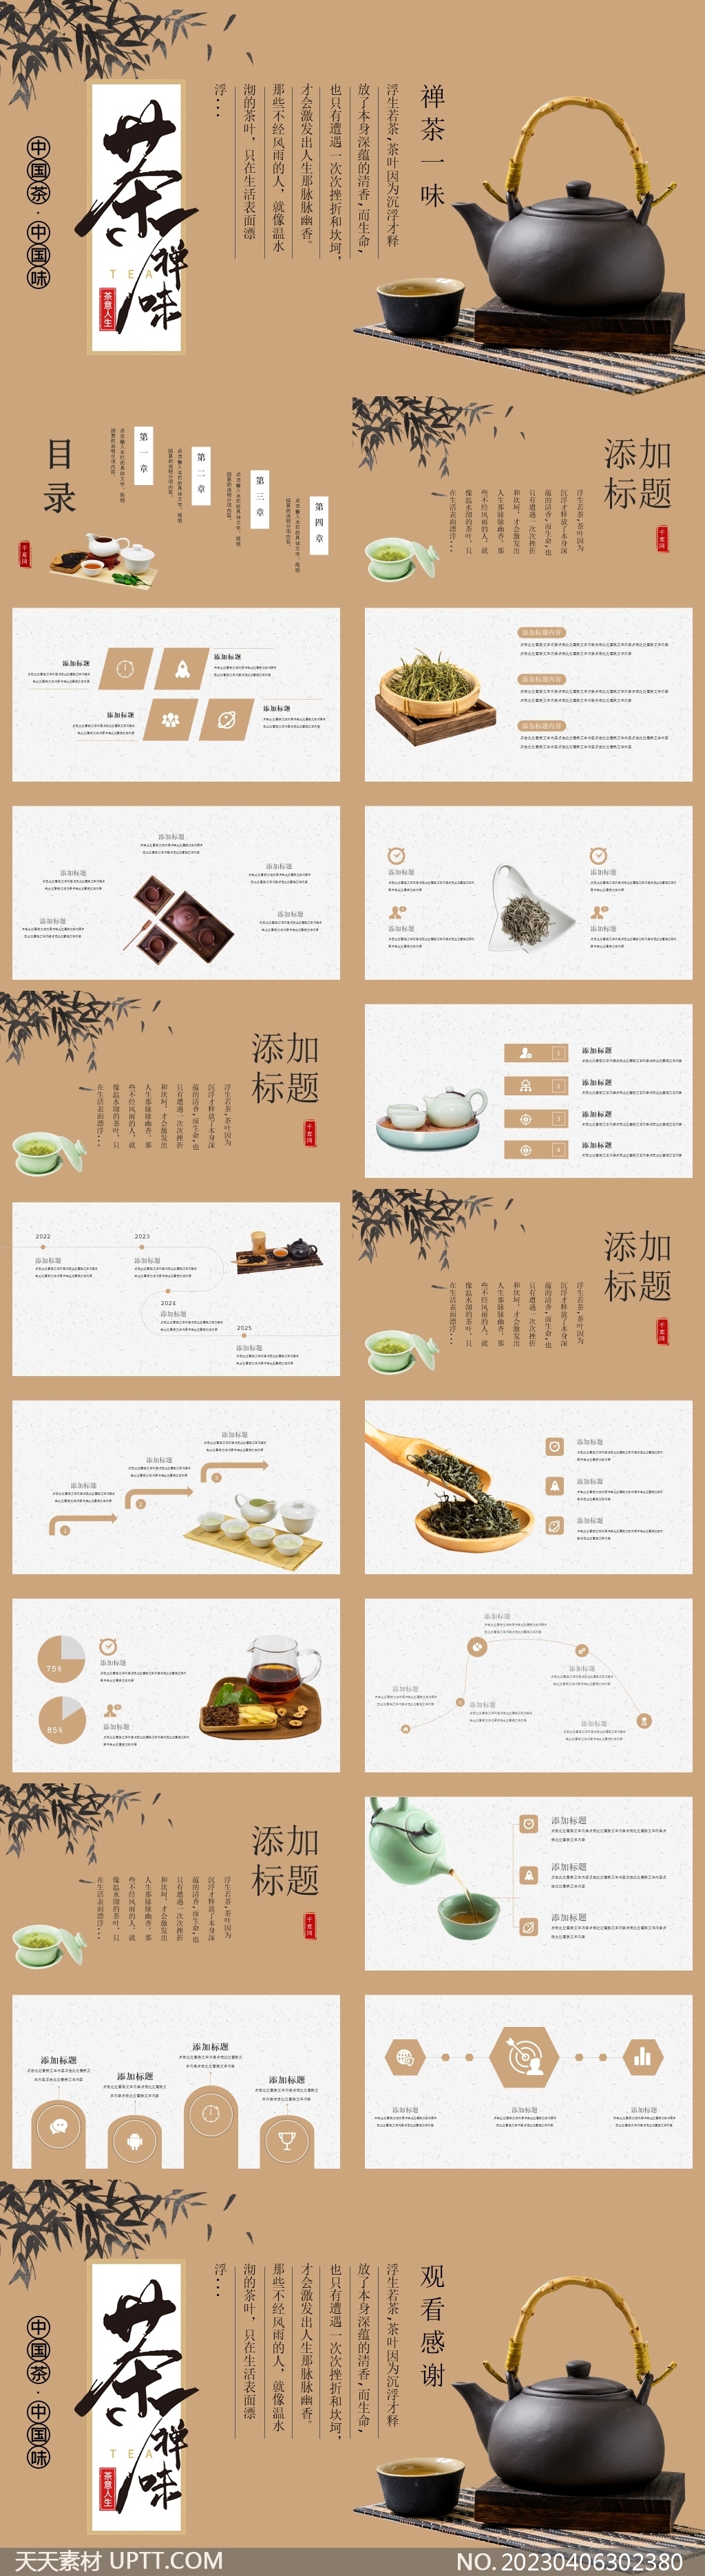 中国茶中国味介绍宣传PPT模板